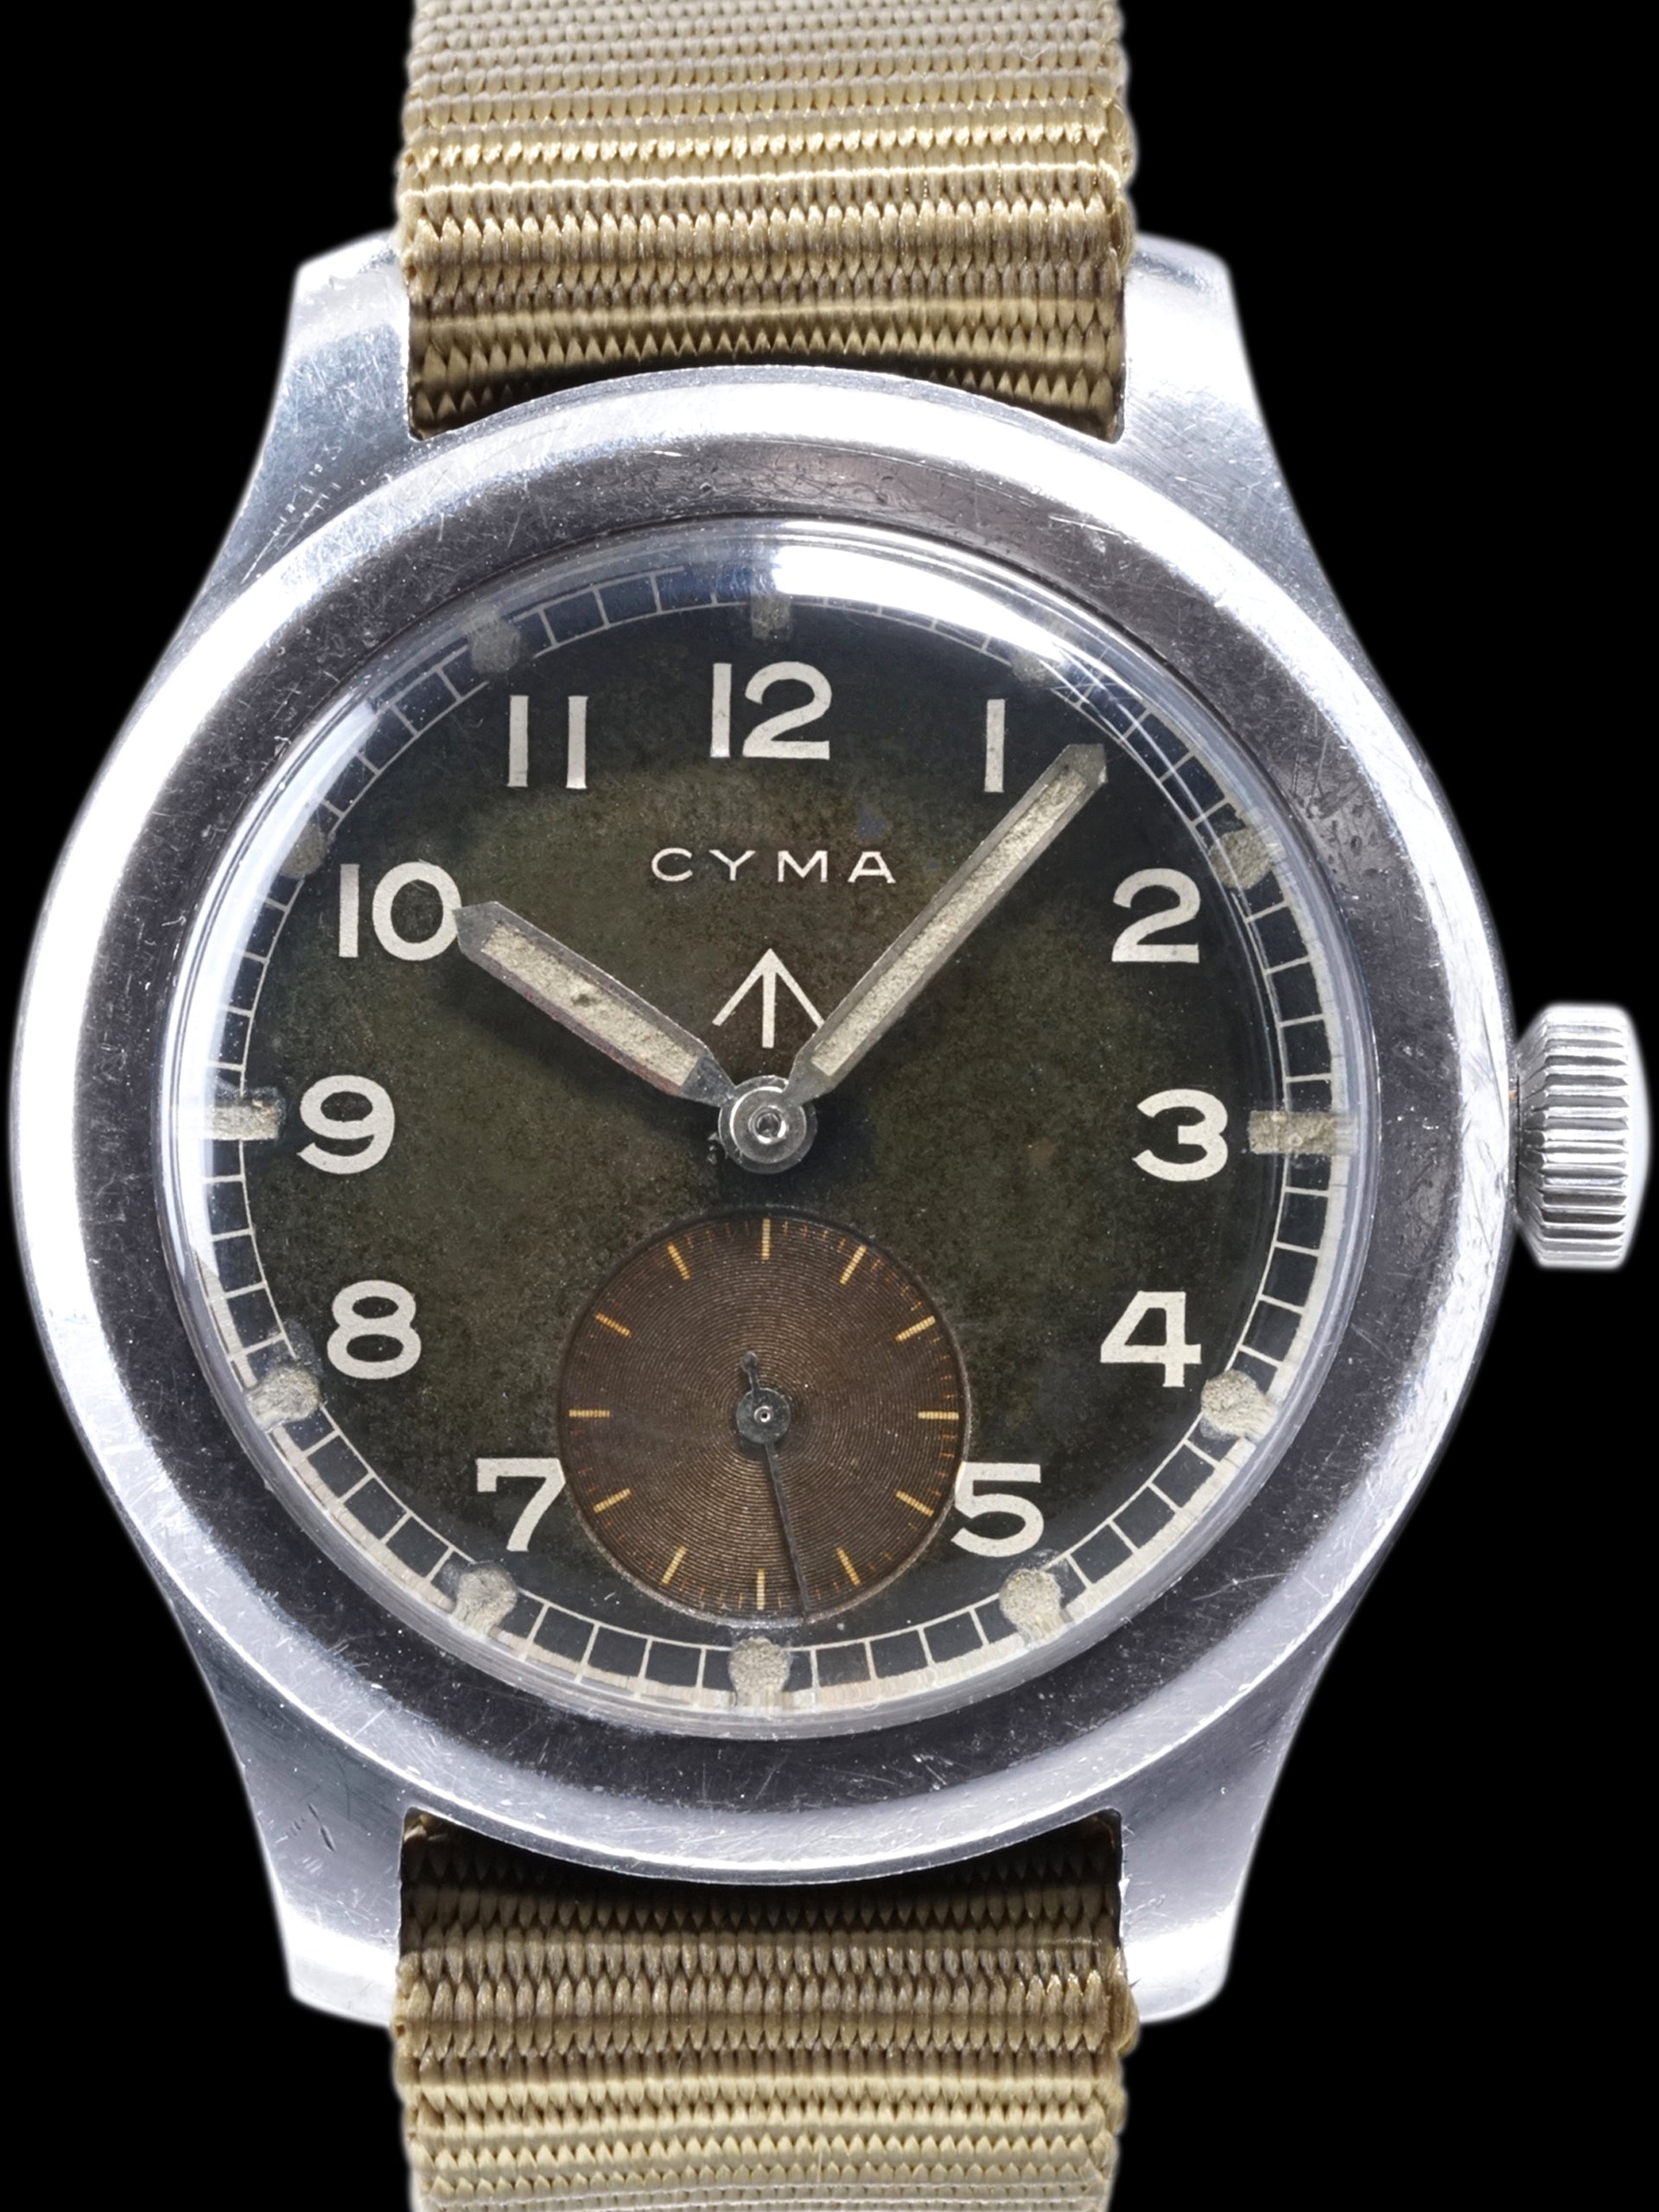 Tropical 1940s Cyma Military Watch "Dirty Dozen"